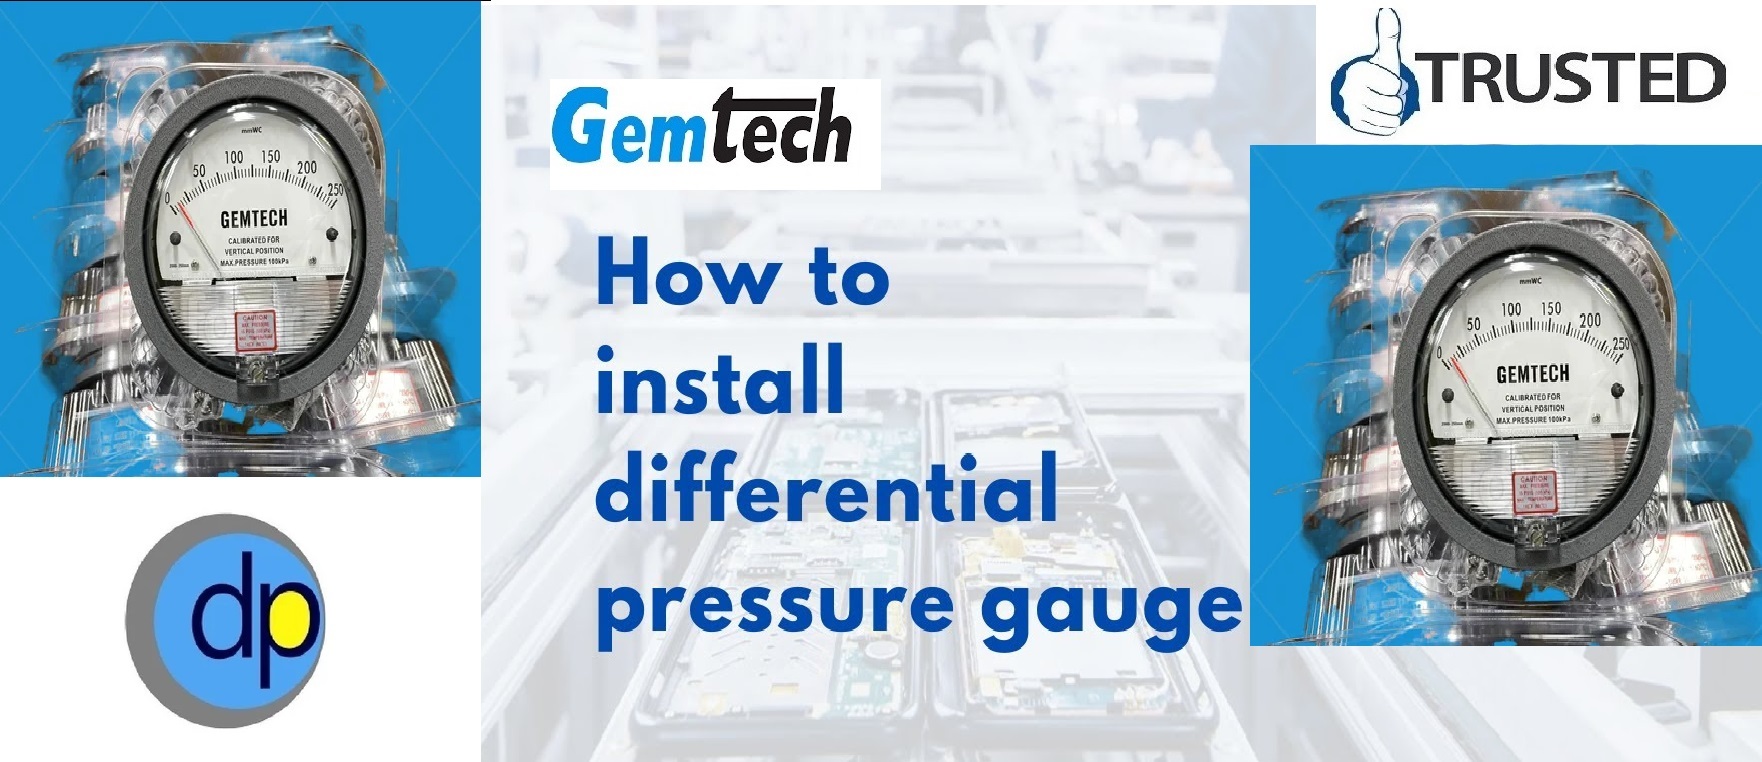 Series G2000 GEMTECH Differential Pressure Gauges from Delhi